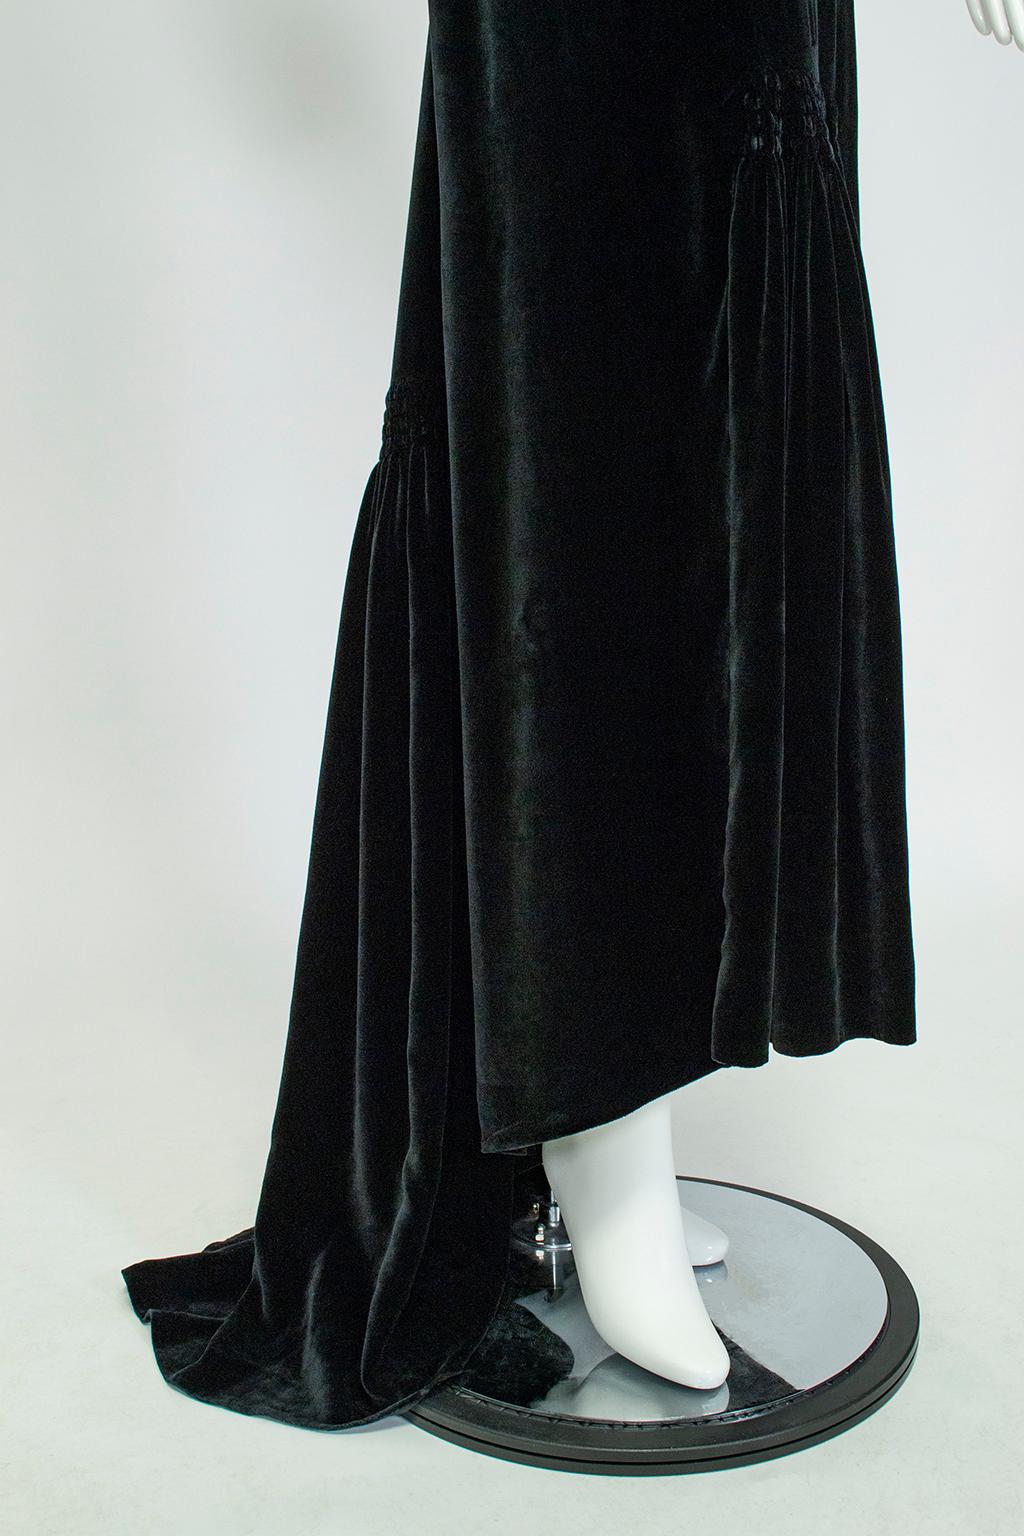 Aesthetic Open Back Black Velvet Ruff Gown w Train, Hearst Castle - M-L, 1930s For Sale 8